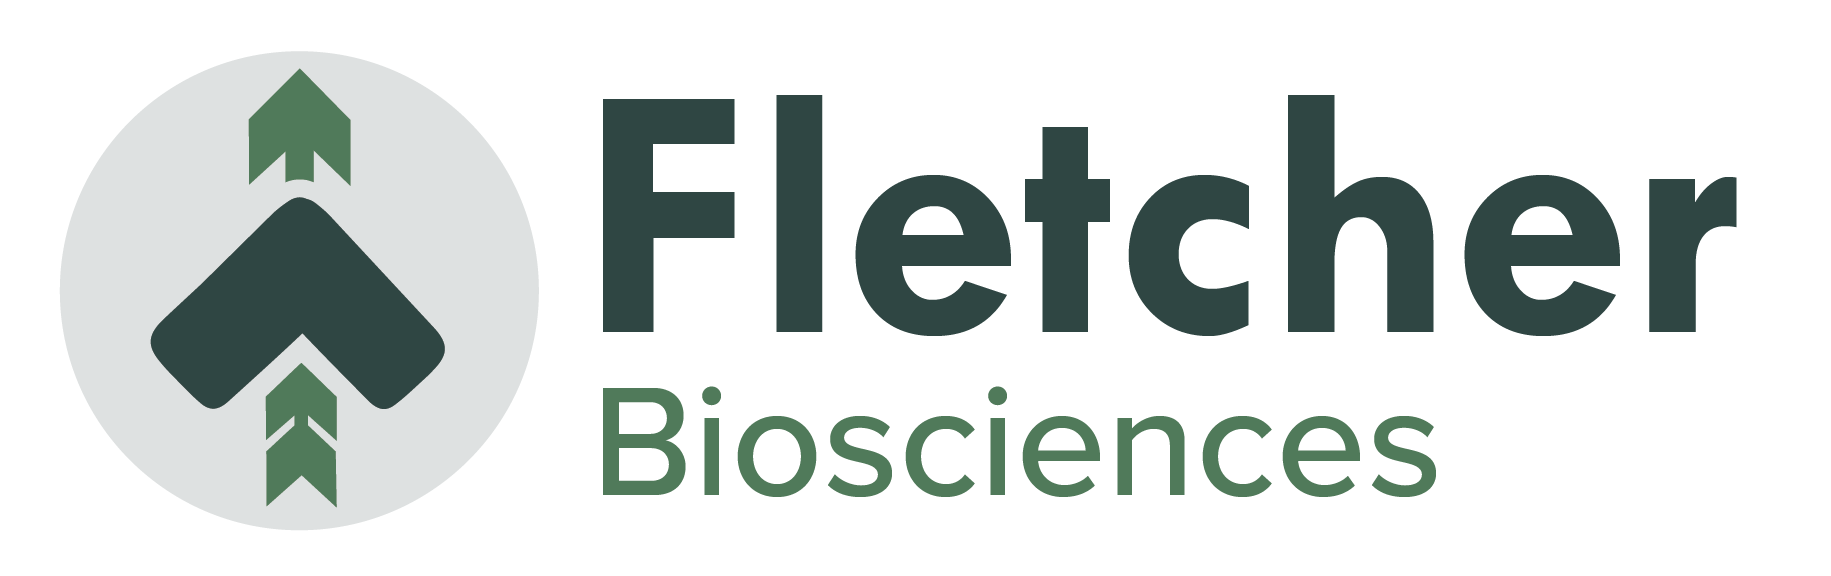 Fletcher full logo 1